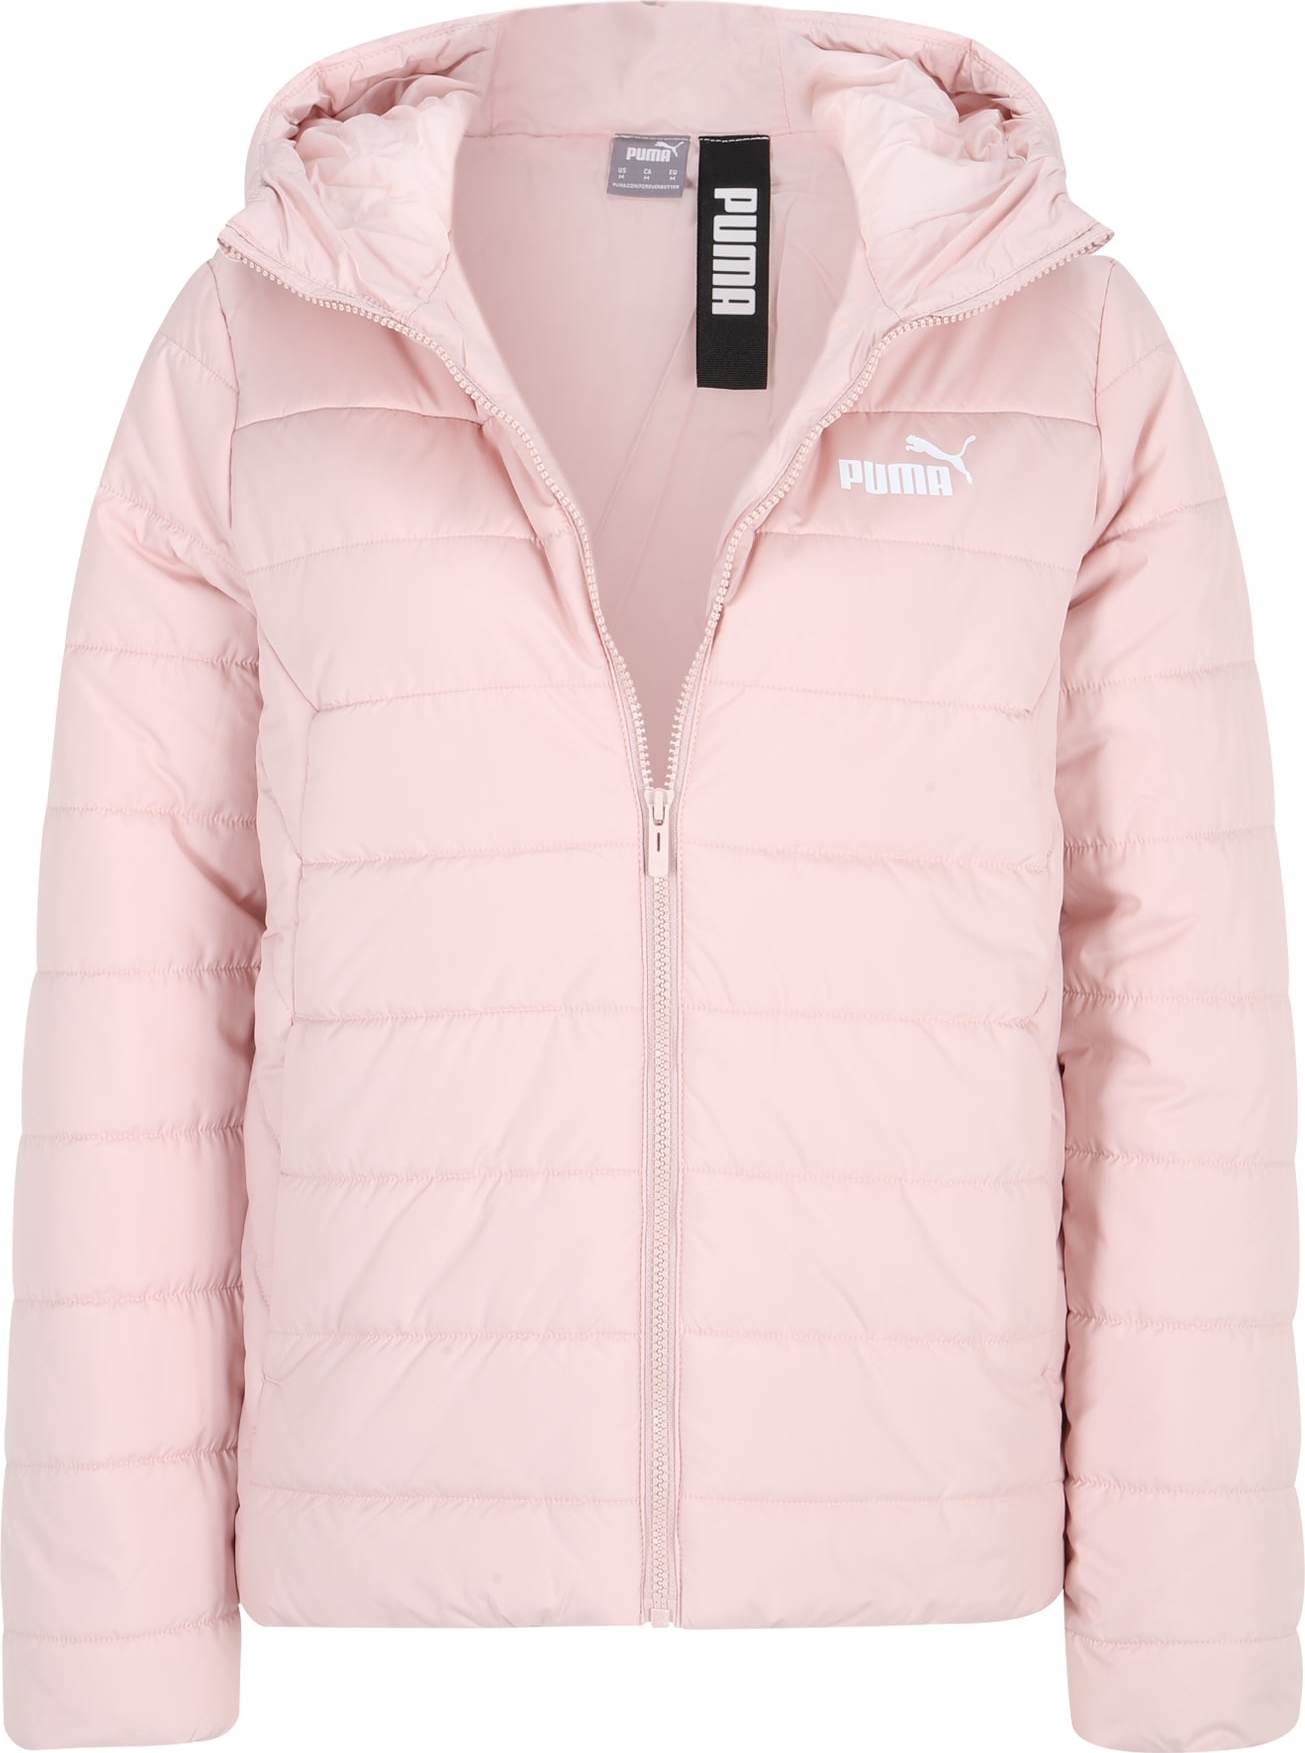 Sportovní bunda Puma pastelově růžová / bílá